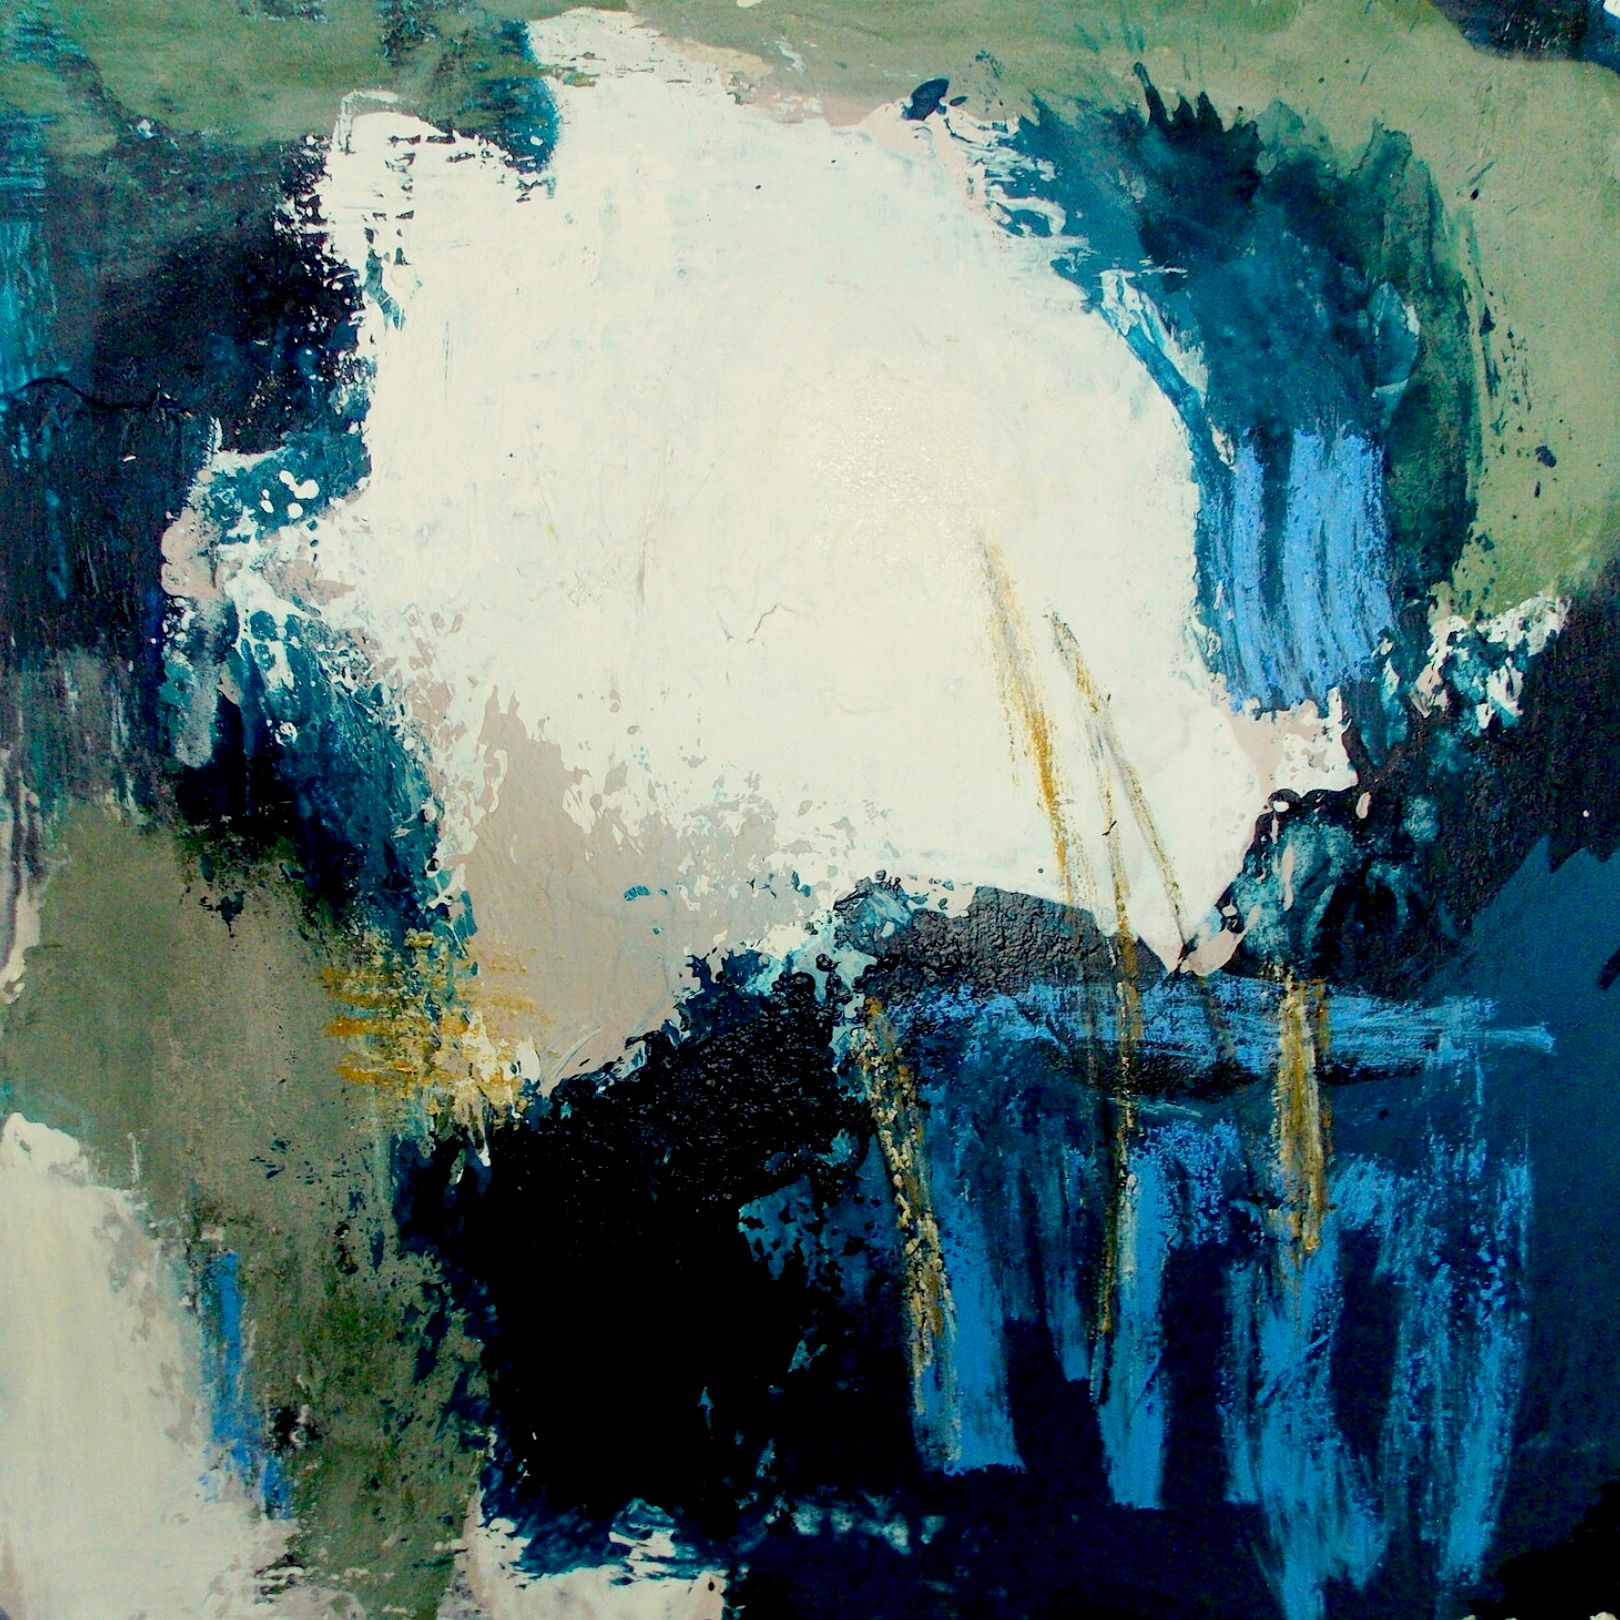 Dans la peinture expressionniste, abstraite et colorée de Christa Haack "Borders and Horizons", les couleurs bleu foncé, vert, vieux rose et blanc dominent sur un fond gris-vert.